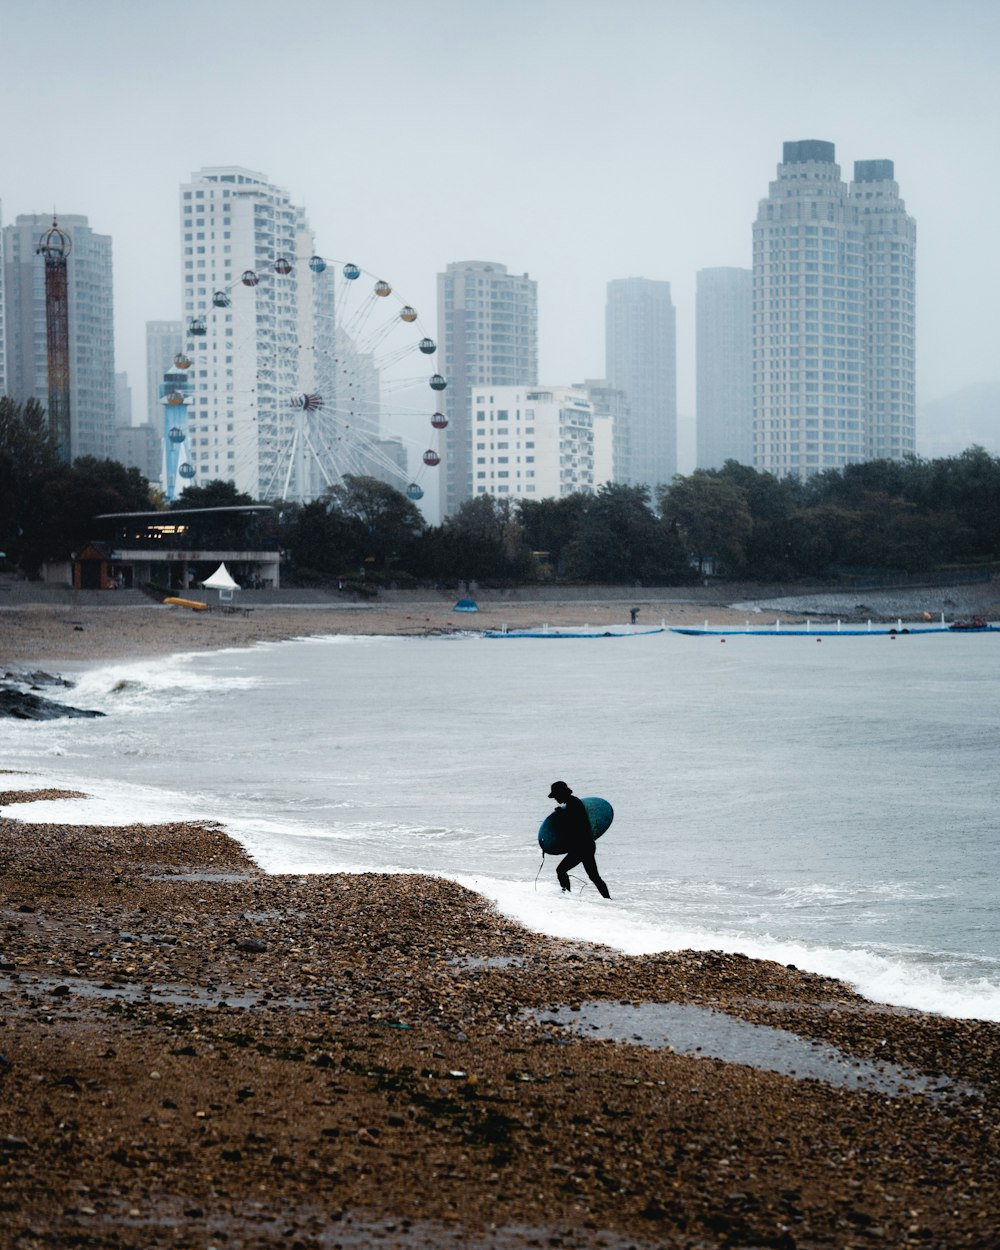 un uomo che trasporta una tavola da surf in cima a una spiaggia sabbiosa